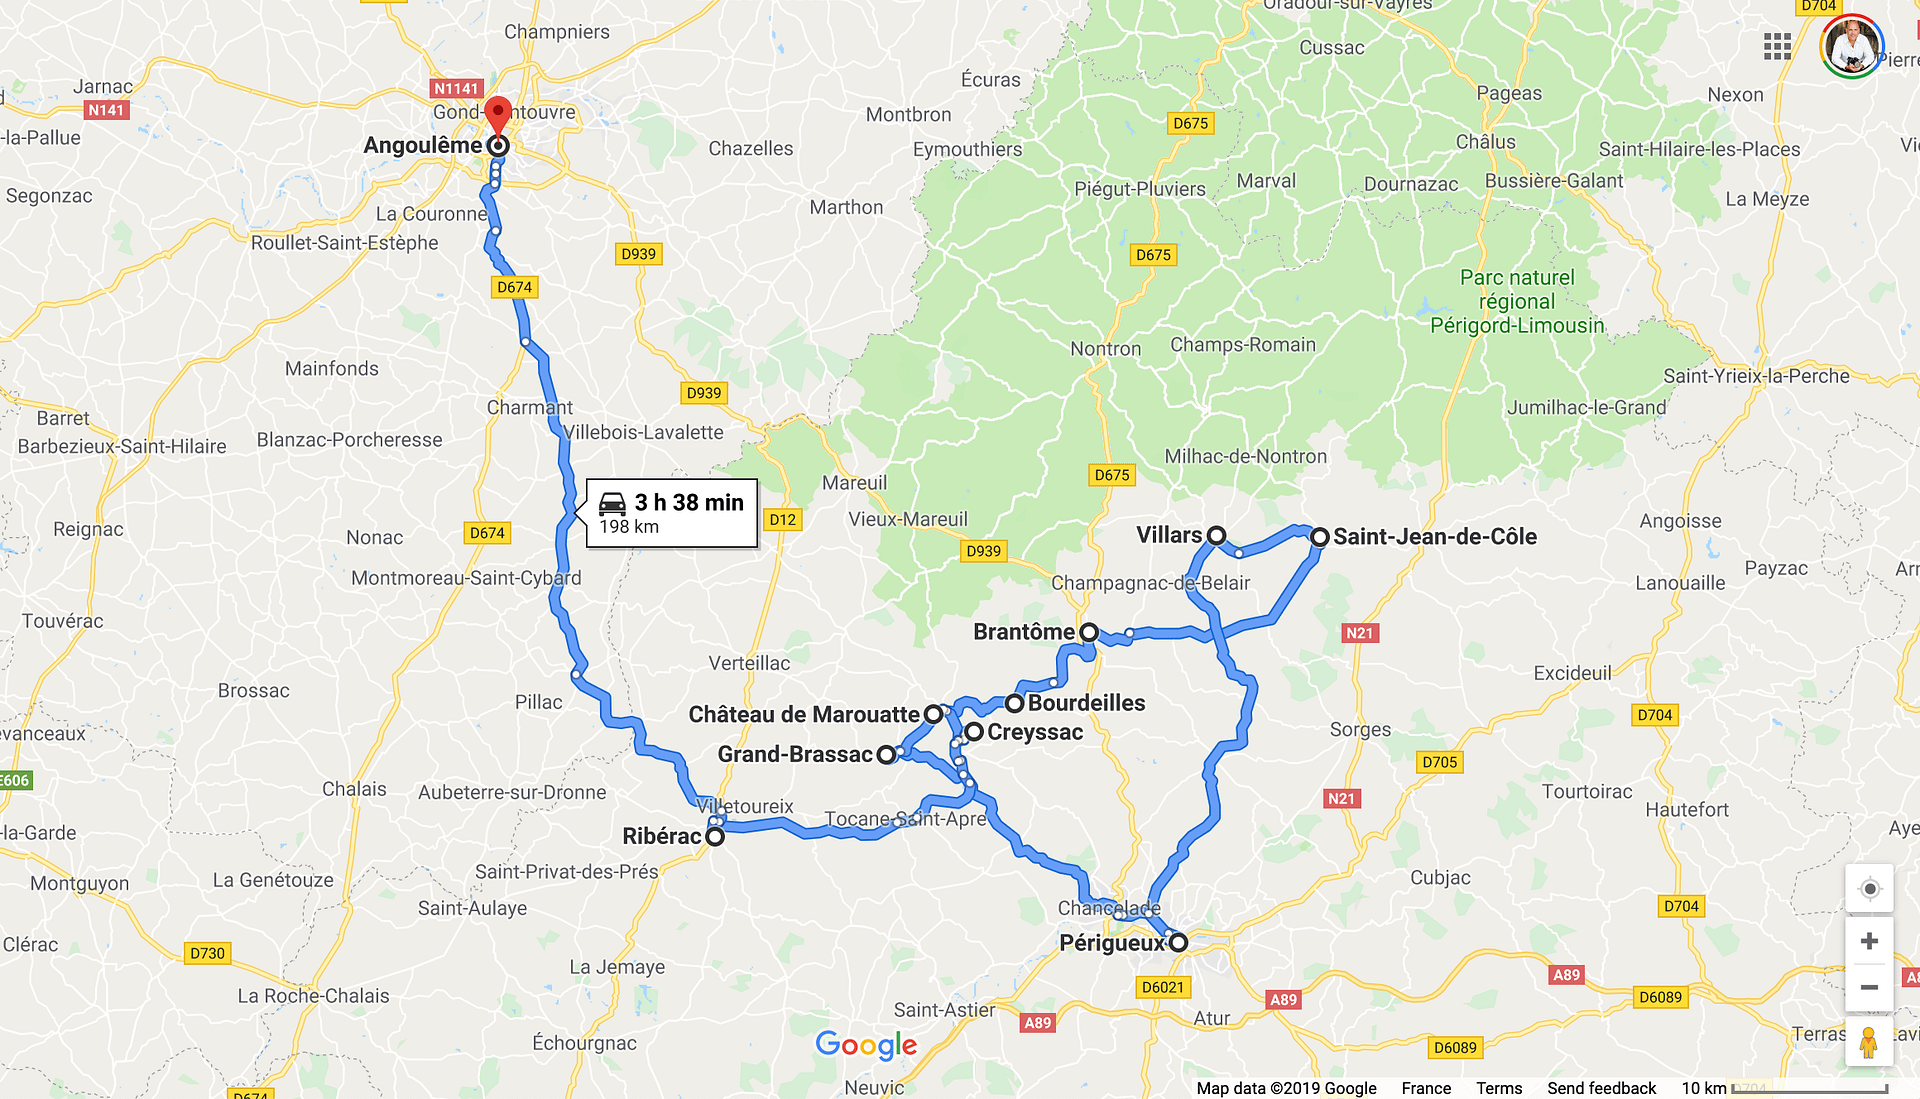 dordogne france road maps